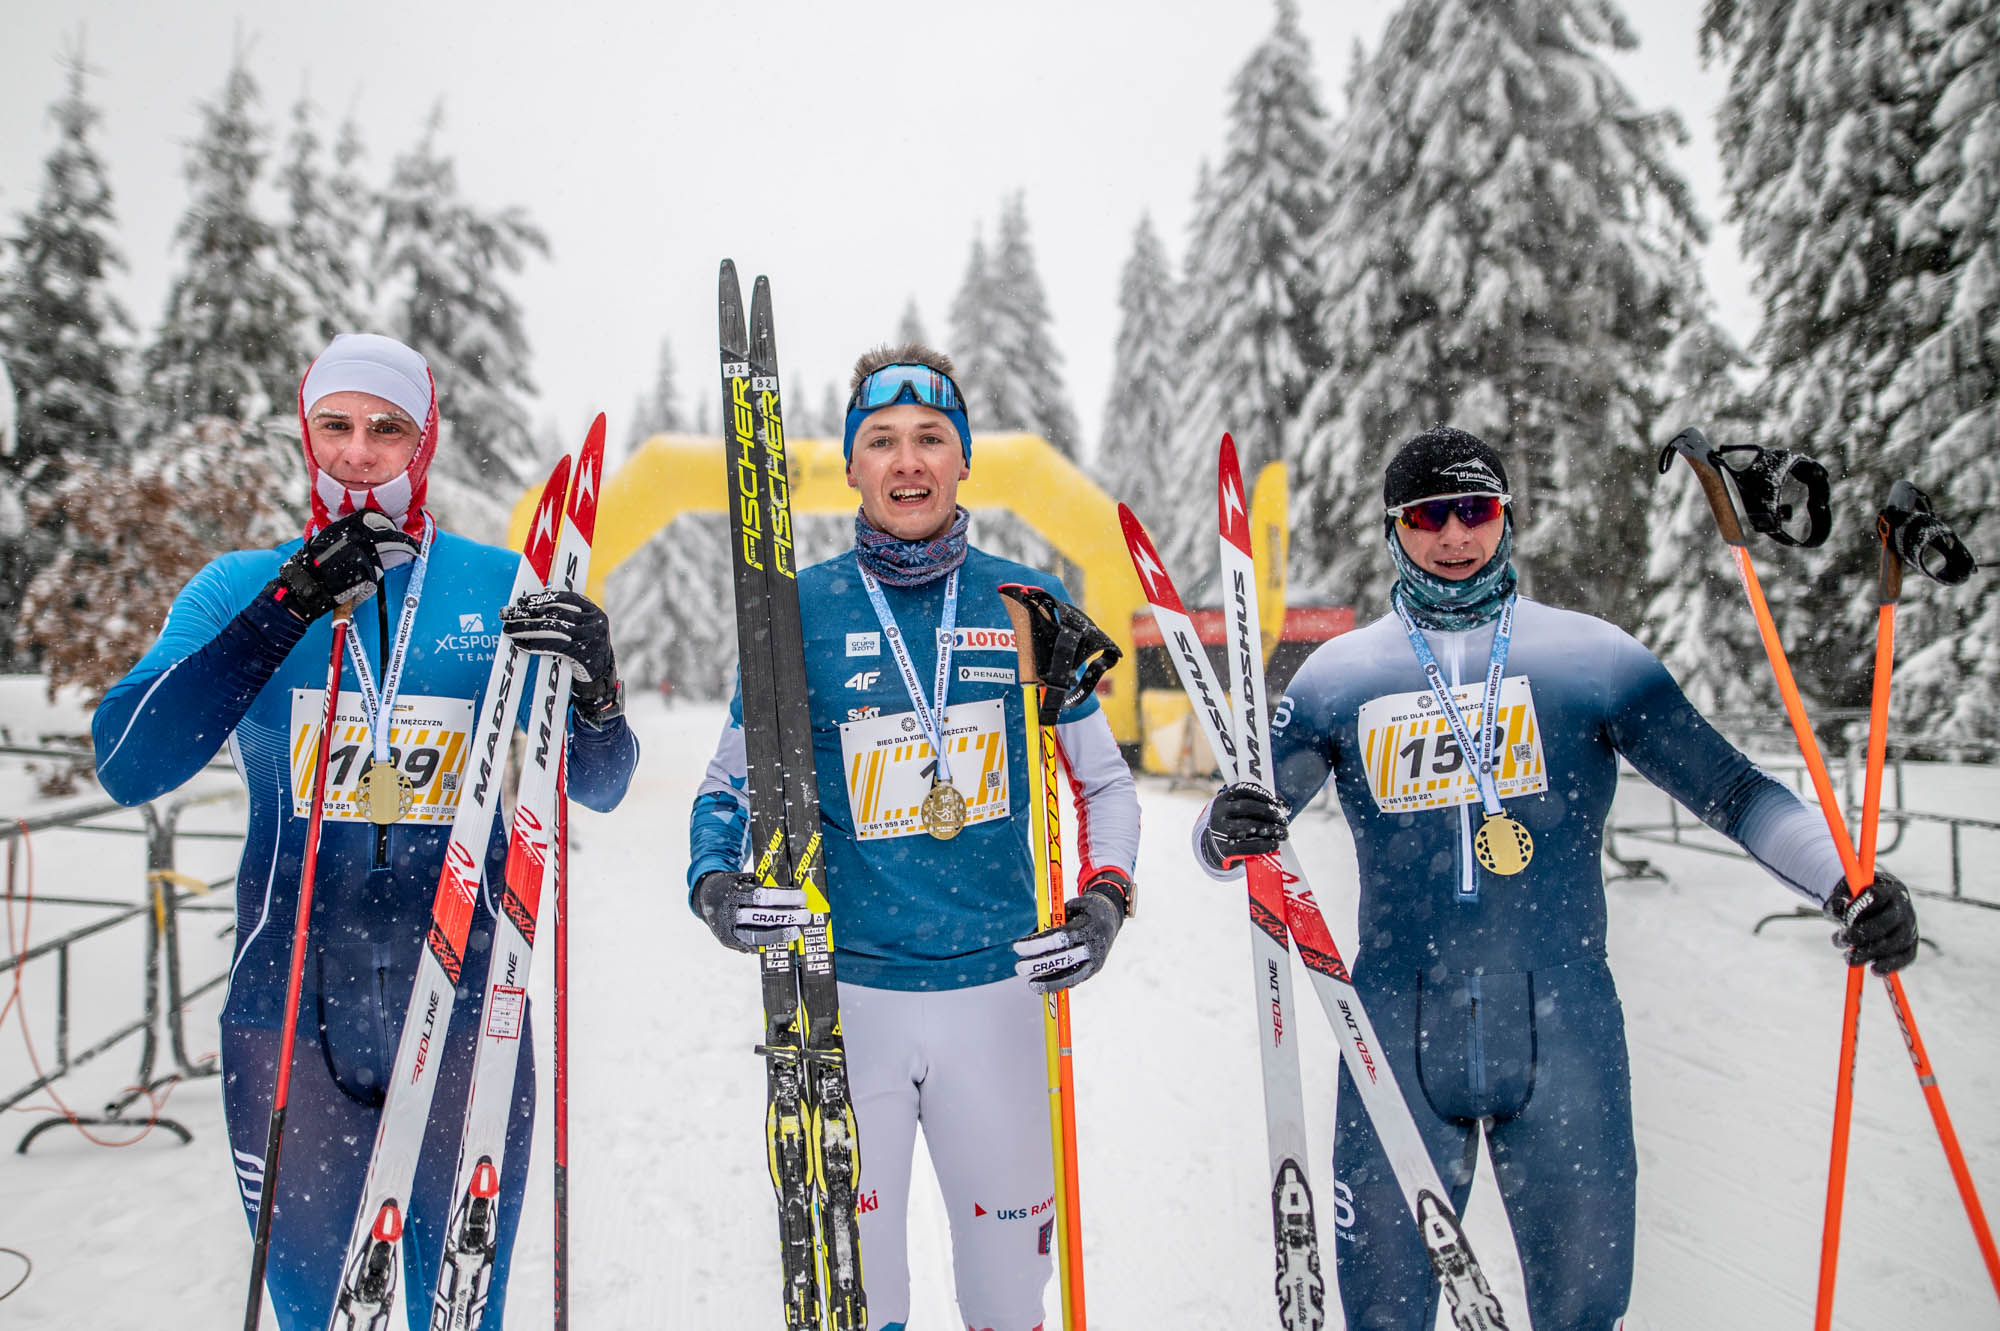 Mimo nieprzyjaznej pogody narciarze cieszyli się z możliwości współzawodniczenia wg zwykłych reguł (fot. Krzysztof Gulbinowicz)